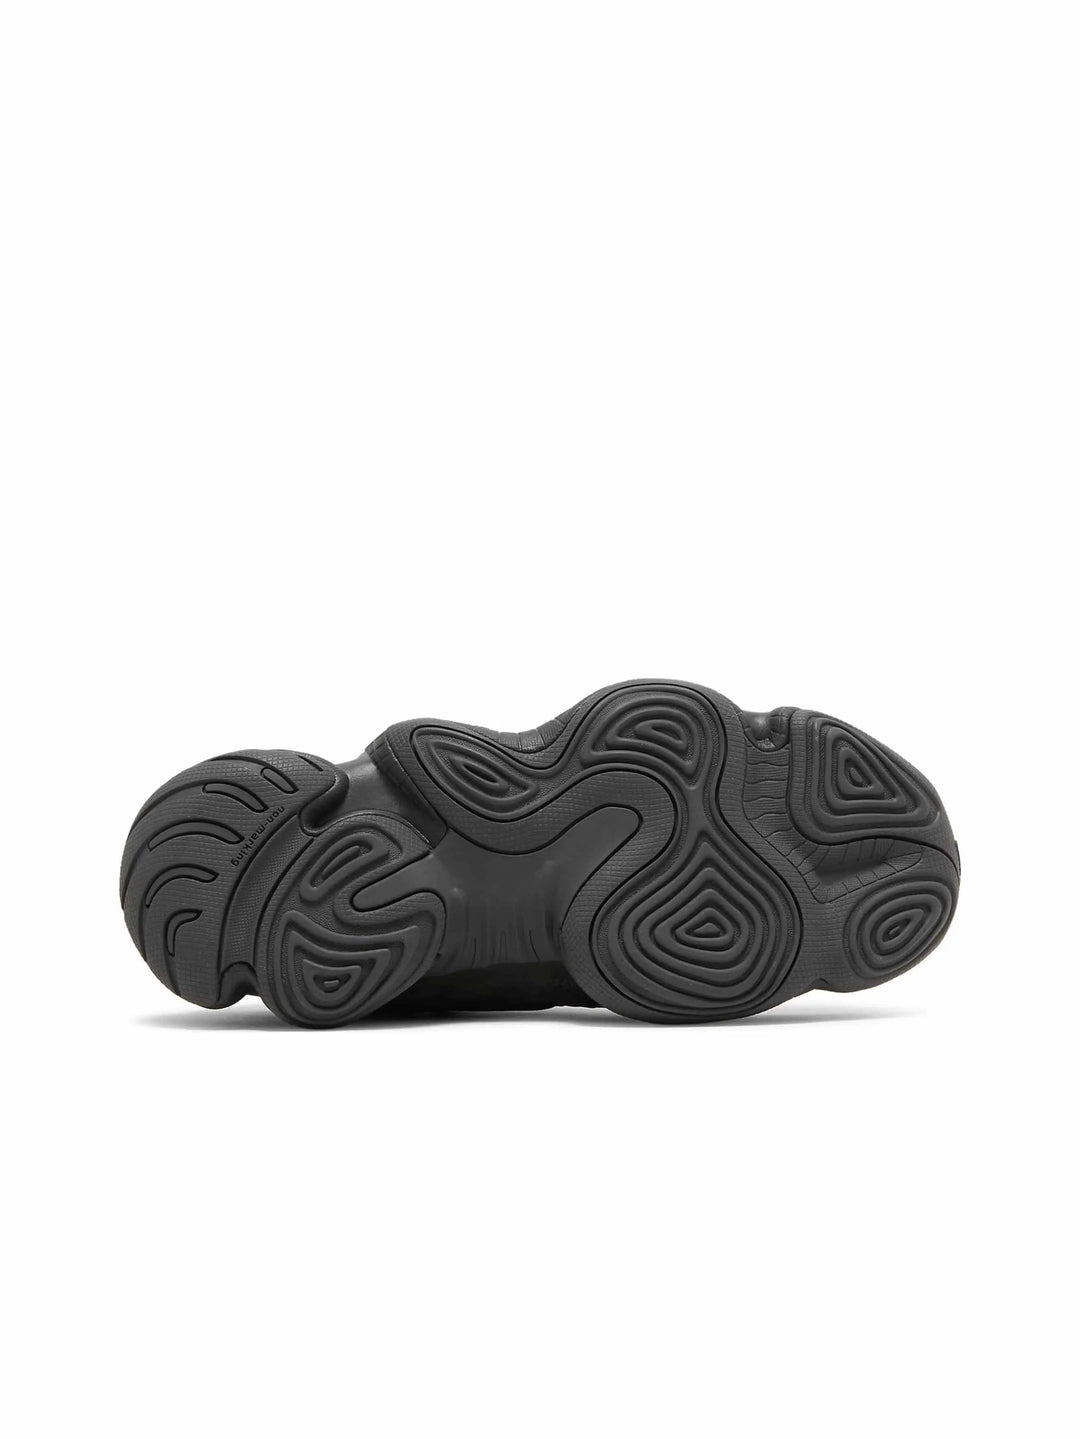 adidas Yeezy 500 Utility Black (2018/2023) in Melbourne, Australia - Prior